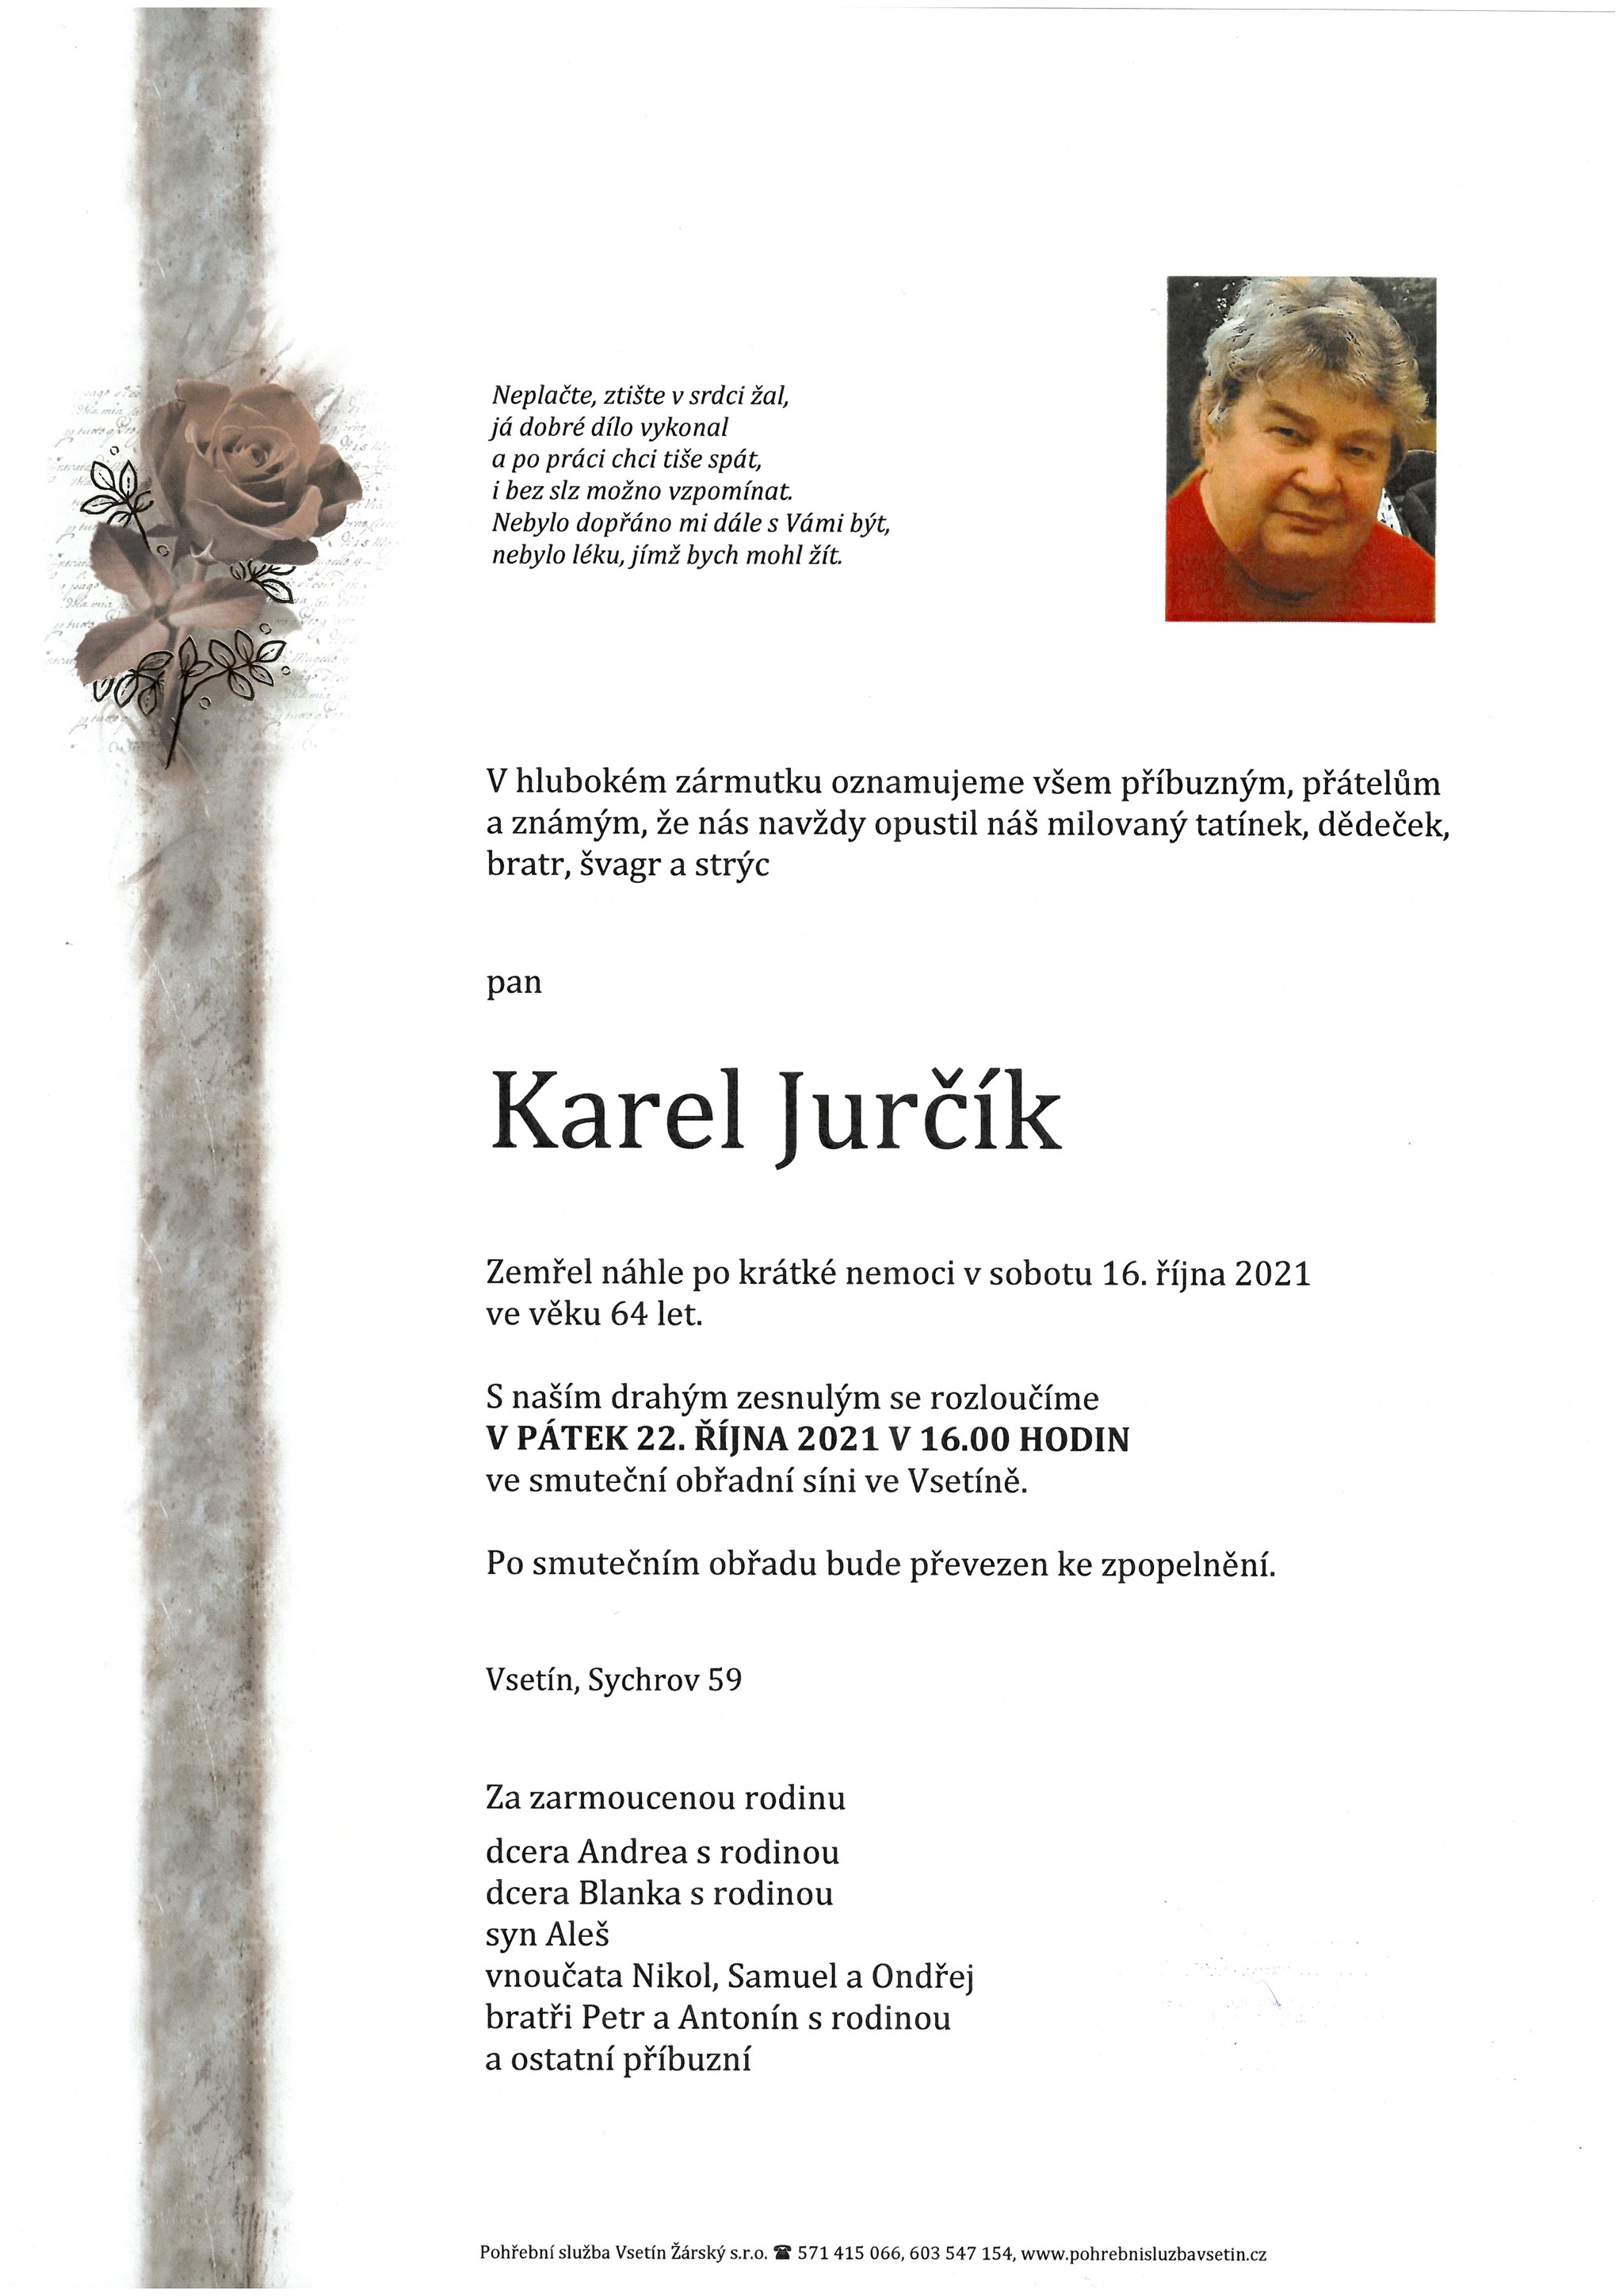 Karel Jurčík